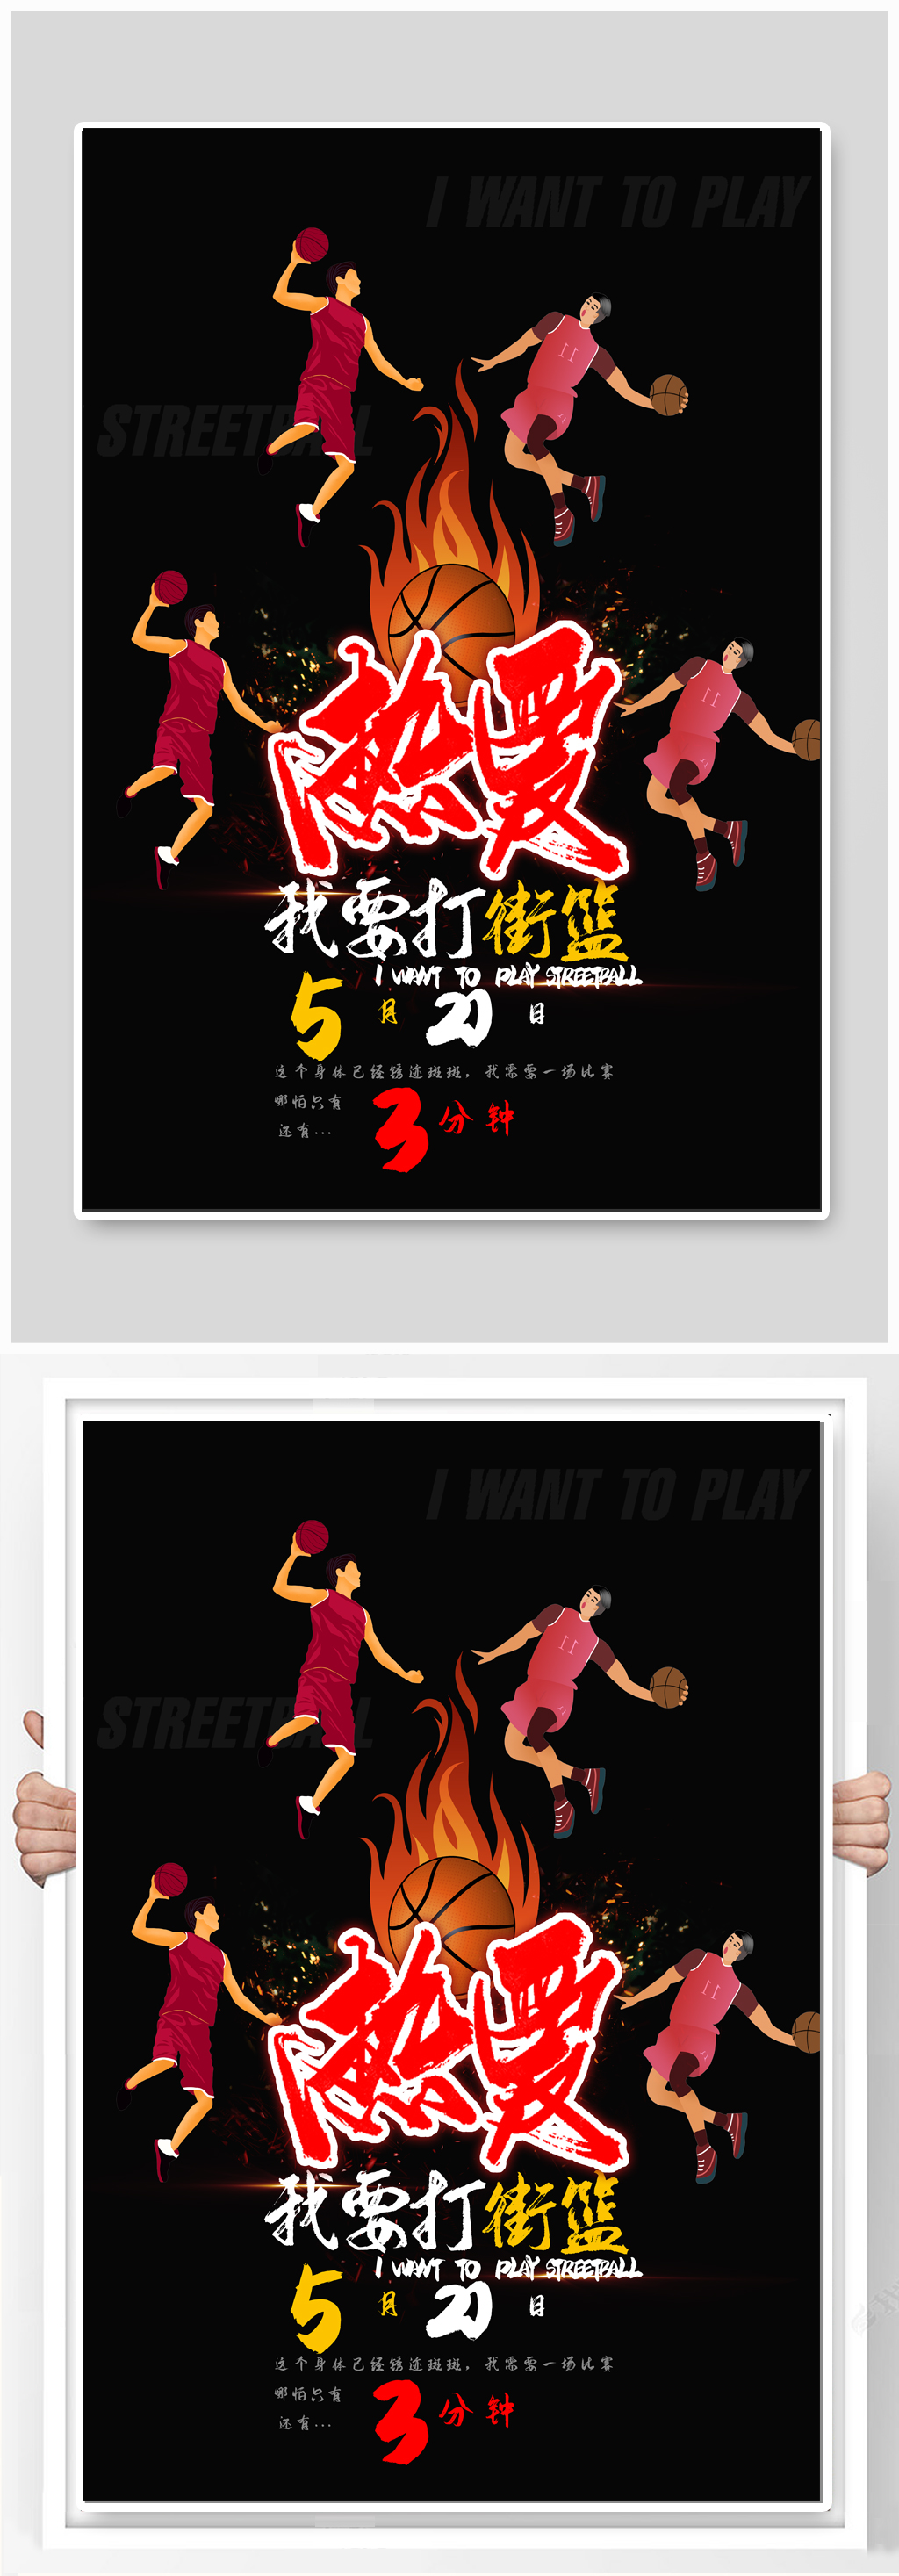 篮球比赛体育运动海报设计素材